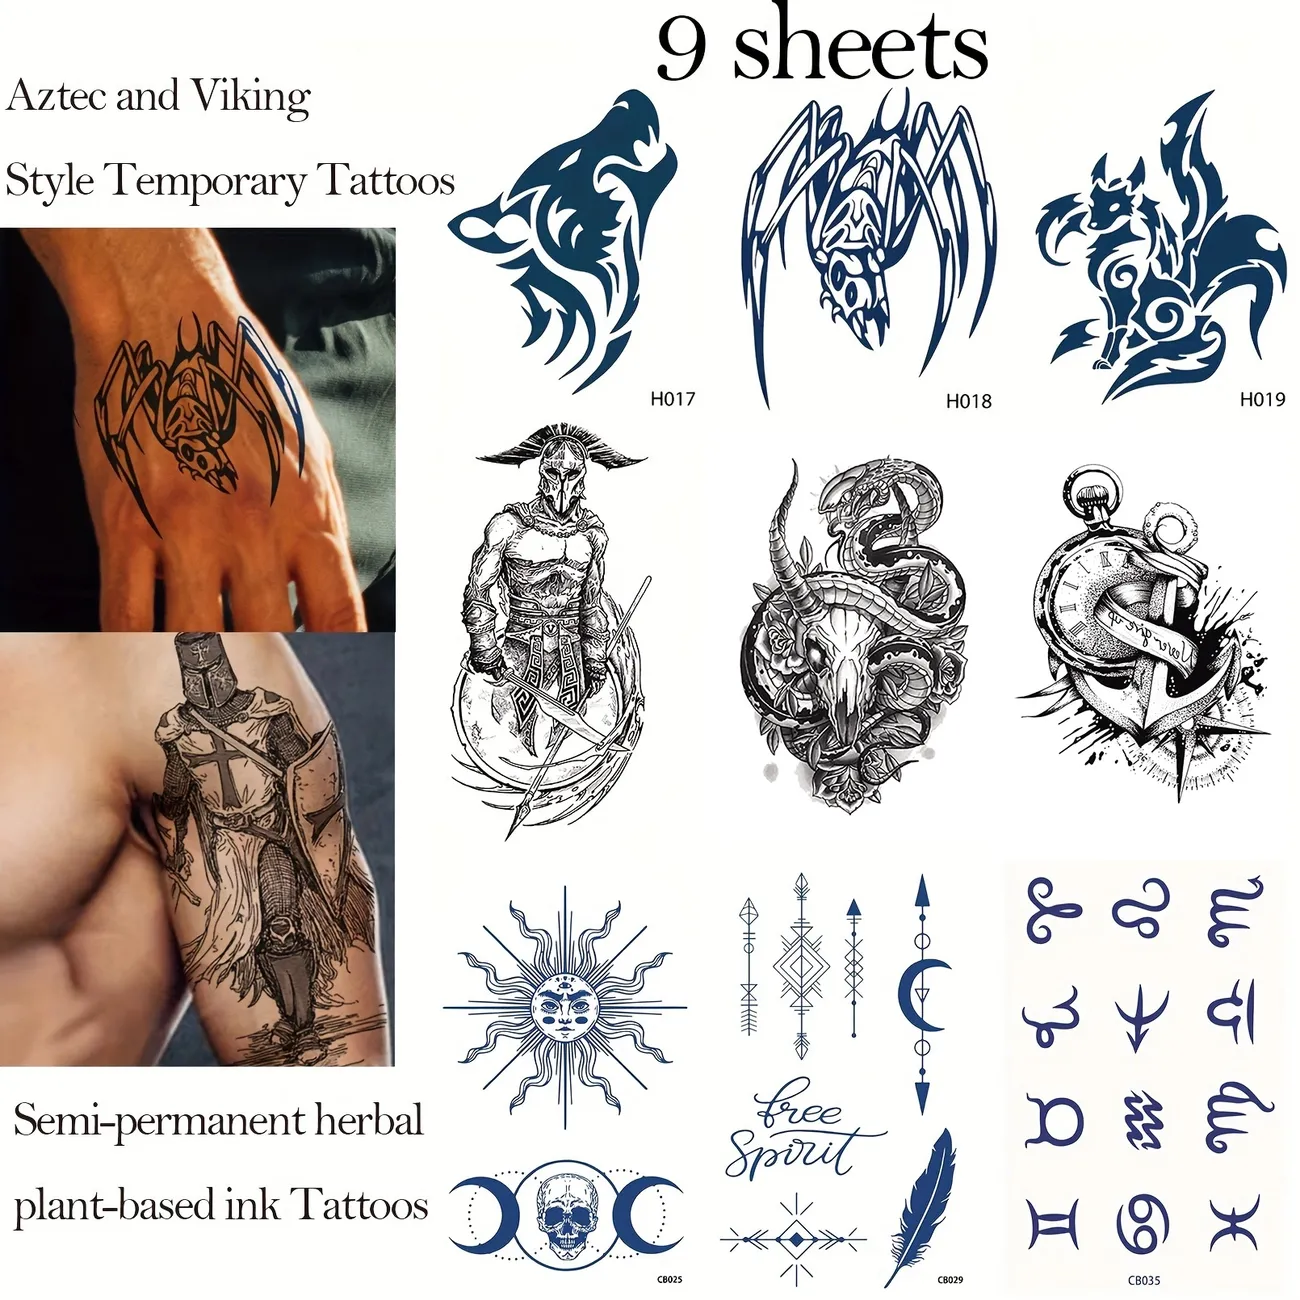 9 Hojas De Tatuajes Temporales Semipermanentes De Estilo Azteca Y Vikingo Que Duran De 1 A